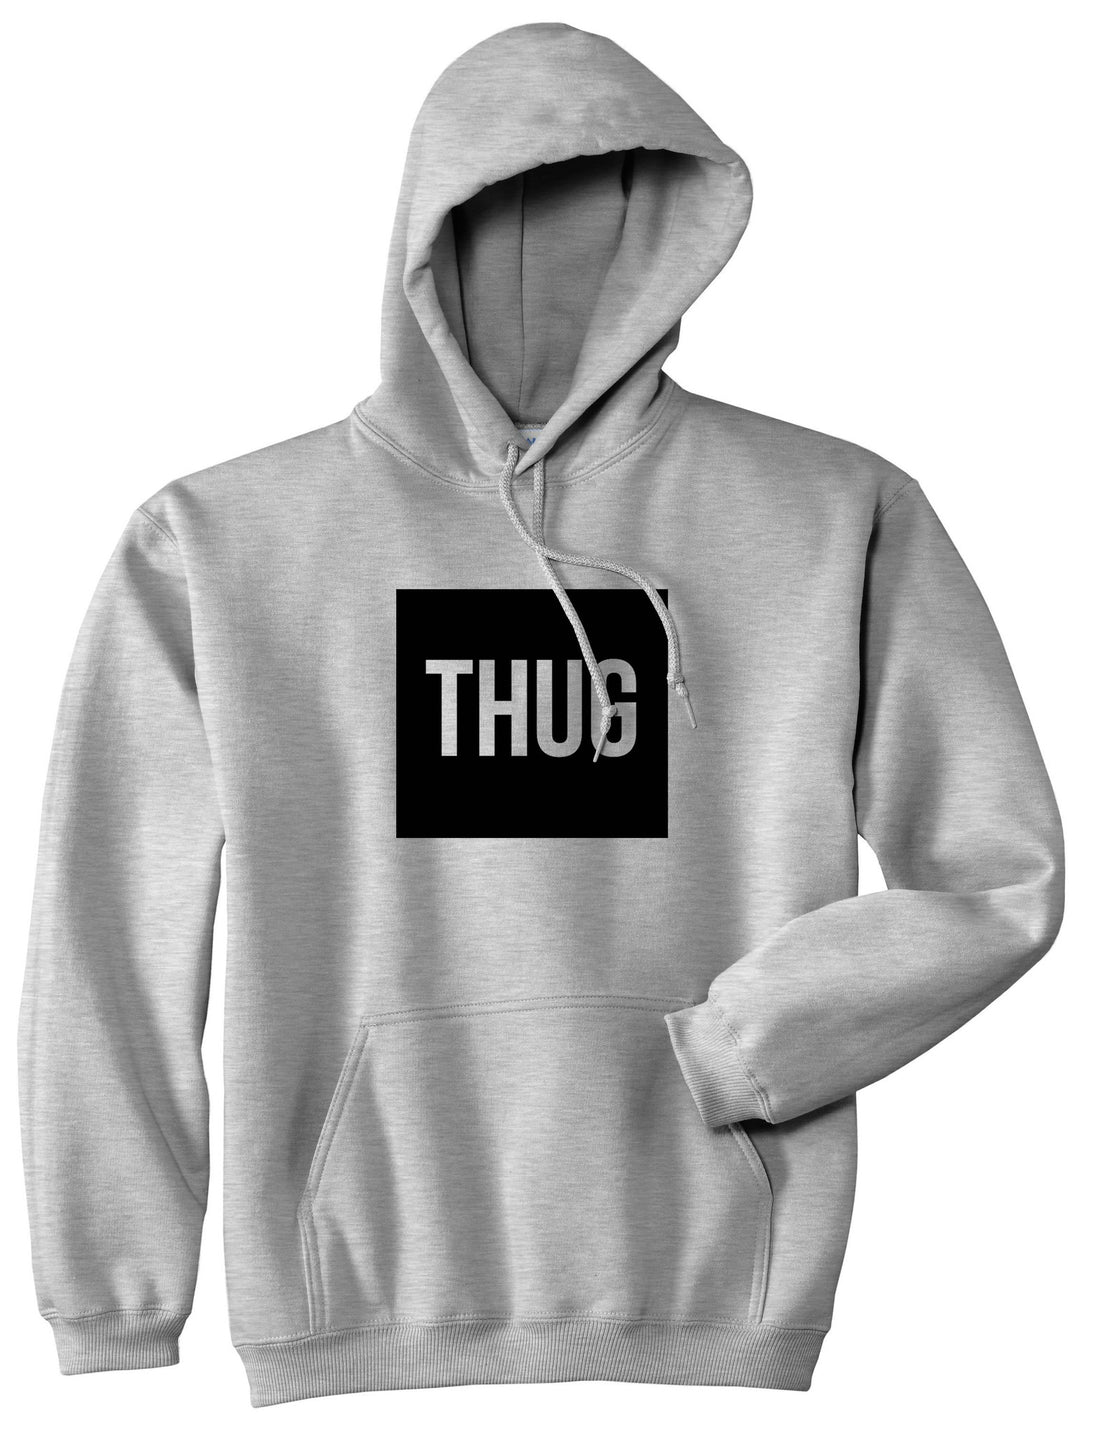 Thug Gangsta Box Logo Boys Kids Pullover Hoodie Hoody in Grey by Kings Of NY